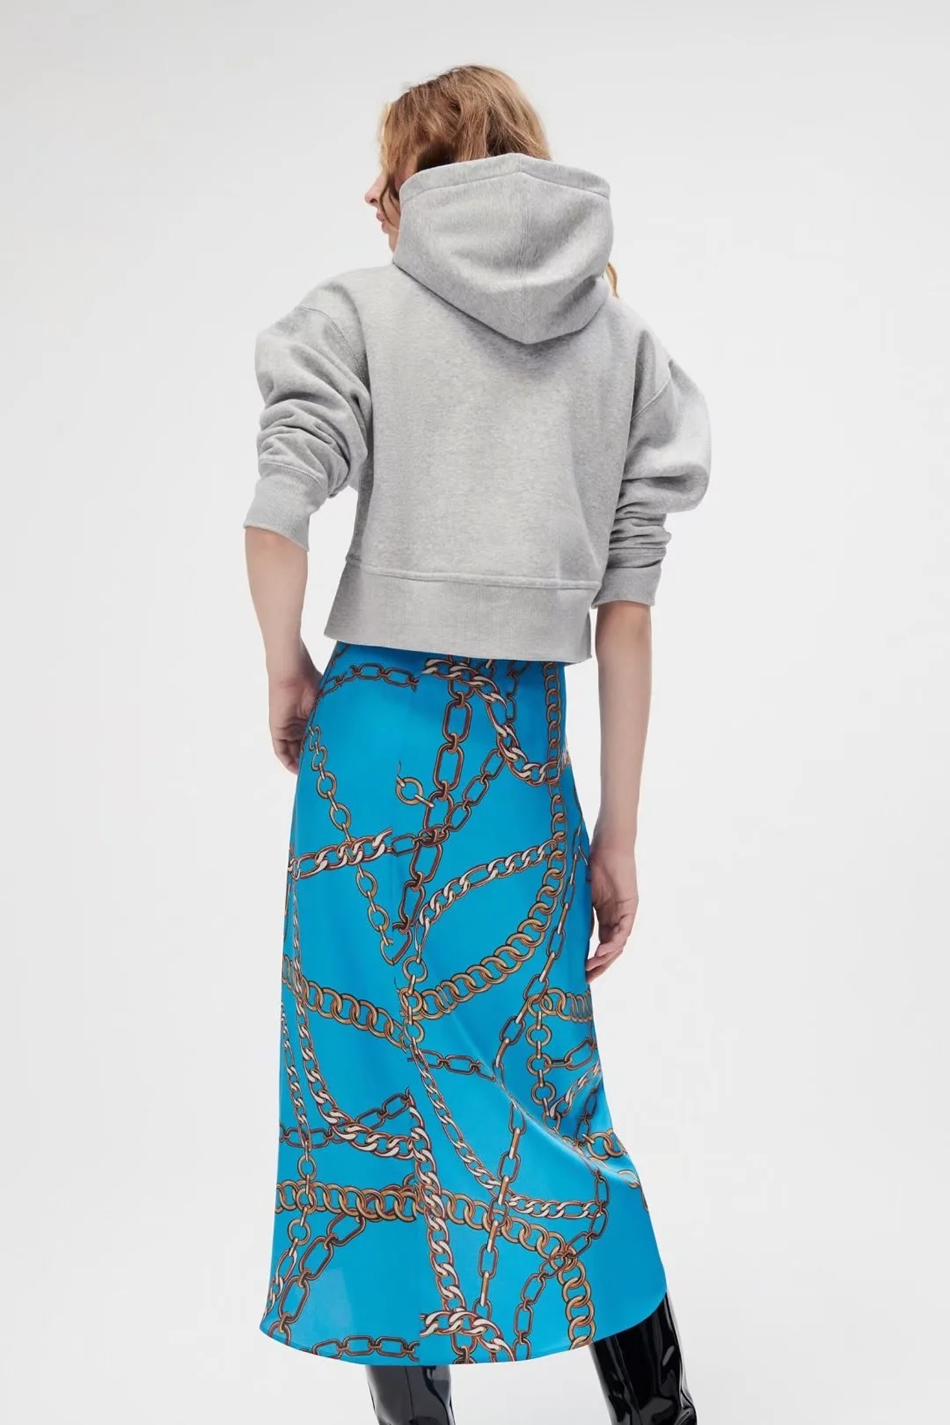 Fashion Blue Chain Print Sarong Skirt,Skirts